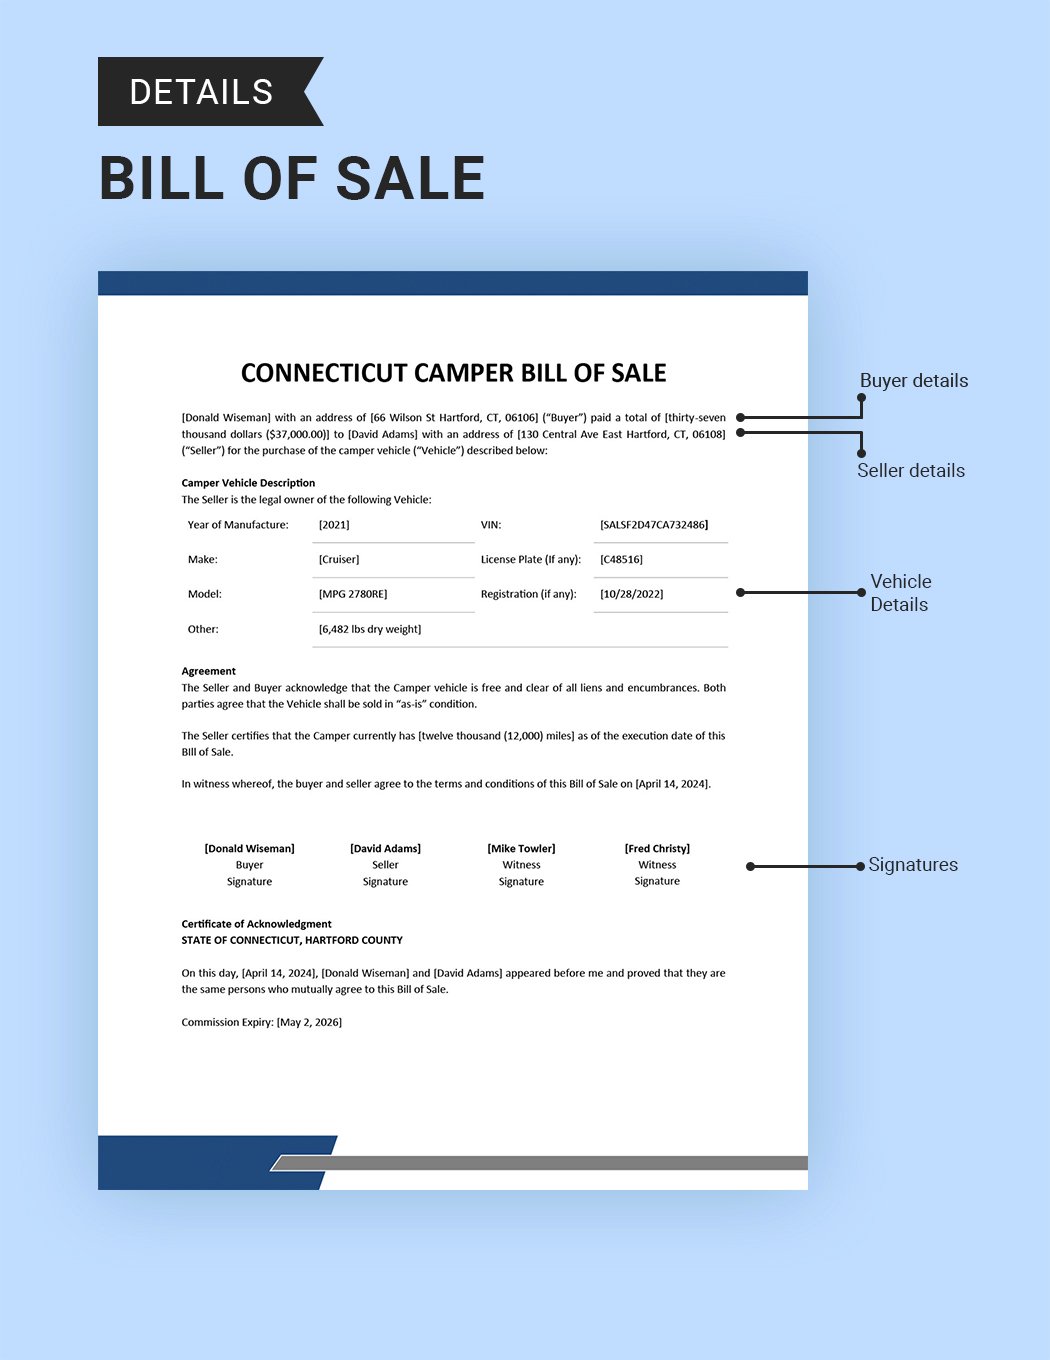 Connecticut Camper Bill of Sale Template